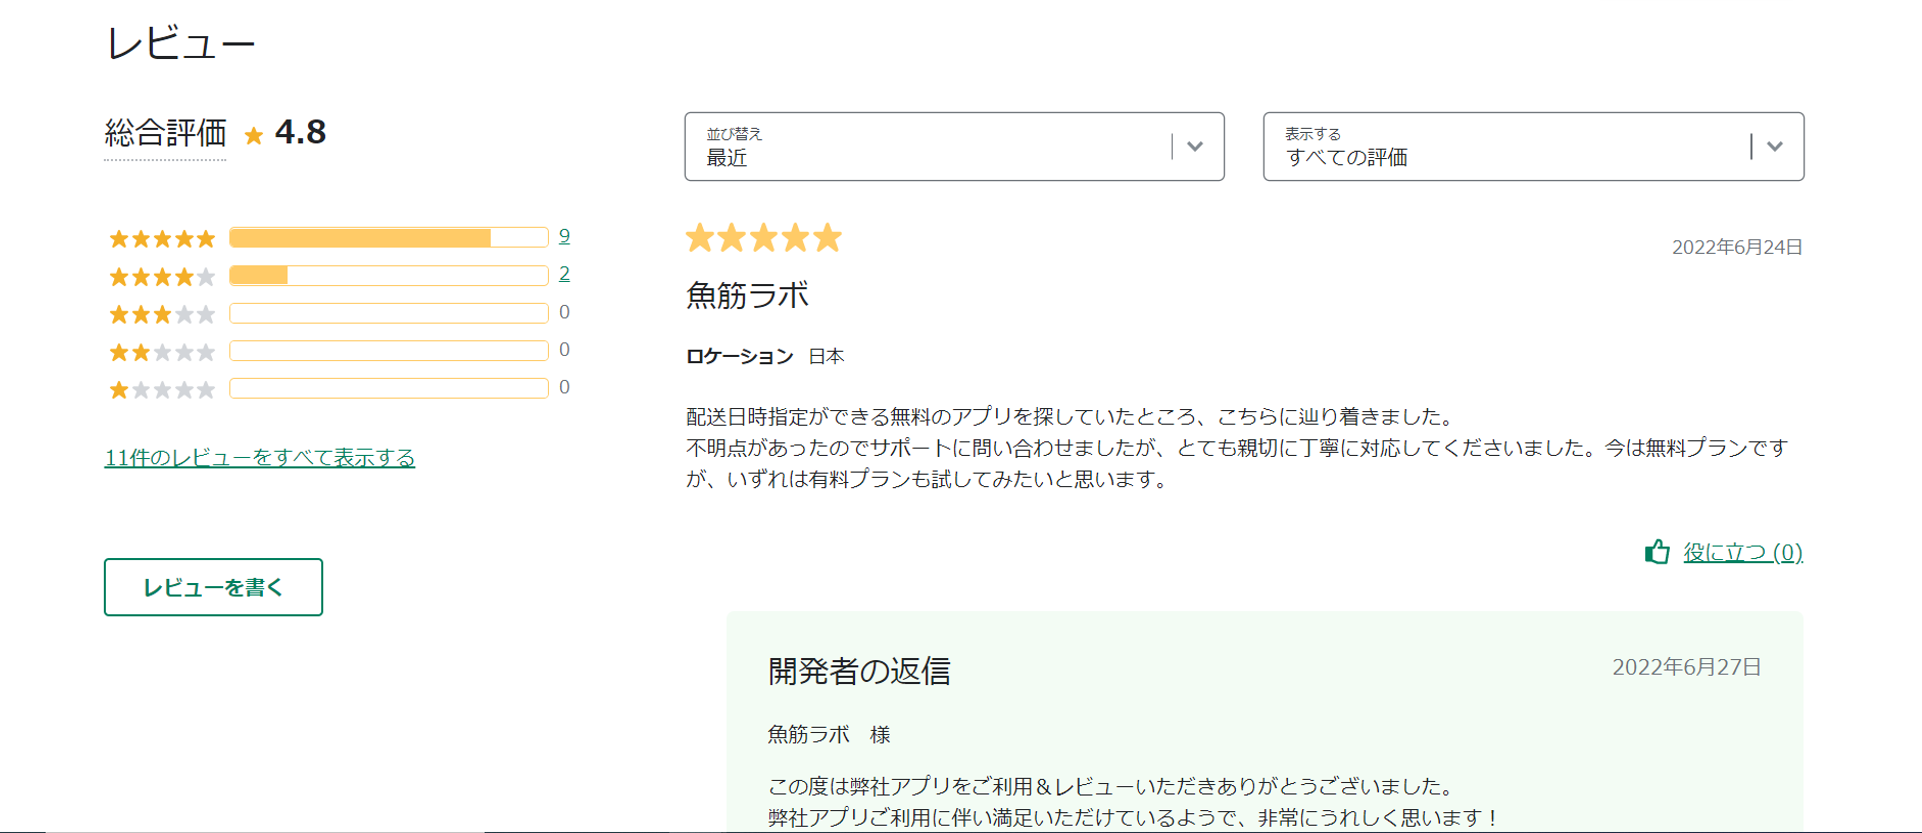 配送&注文サポーターはネットイヤーグループが開発しているShopifyアプリです。日本の企業が開発しているので、もちろんアプリのサポートは日本語対応です。